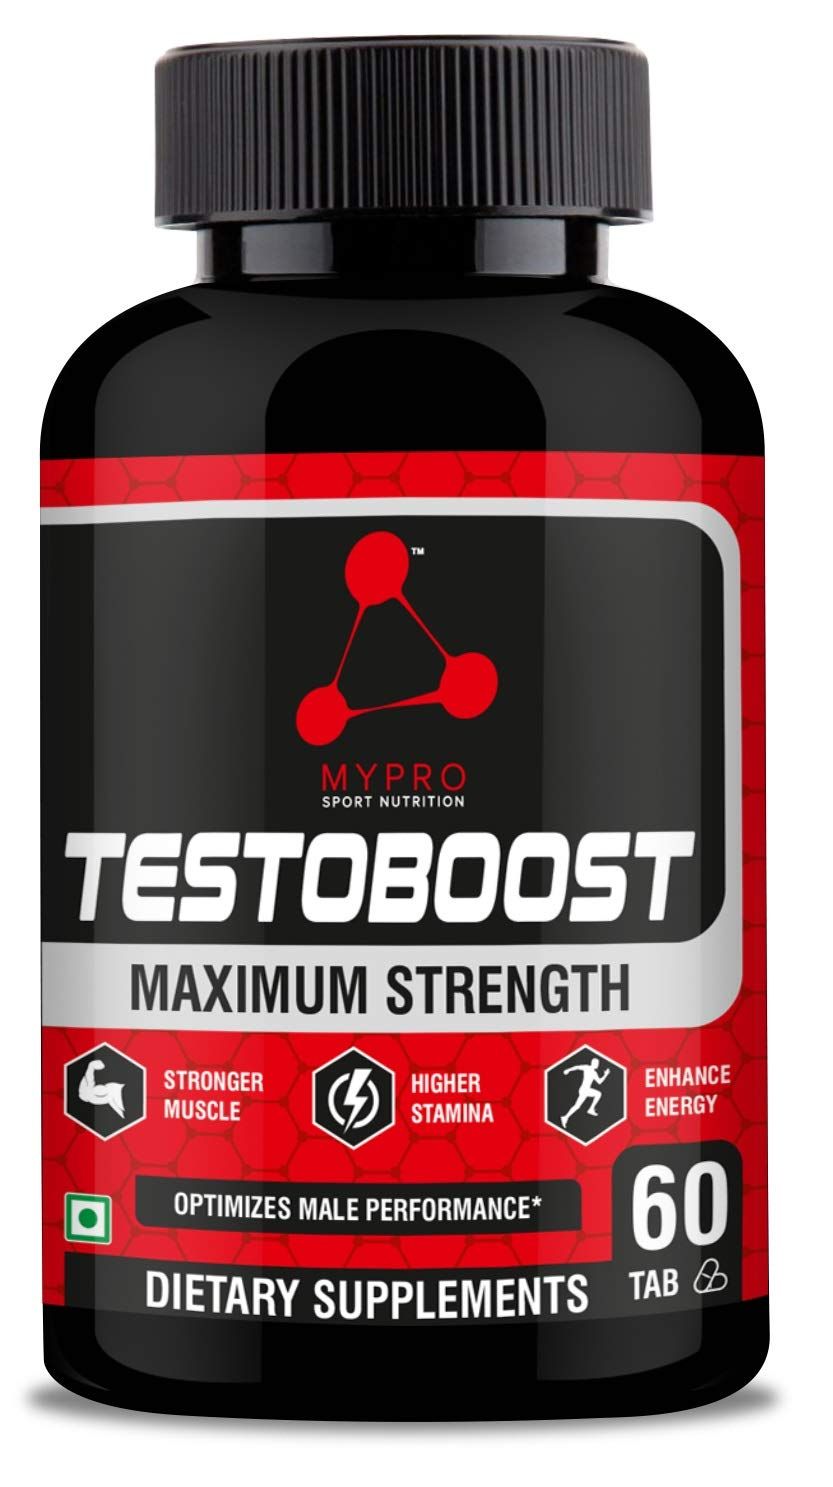 Mypro Sport Nutrition Testosterone Booster Supplement Image